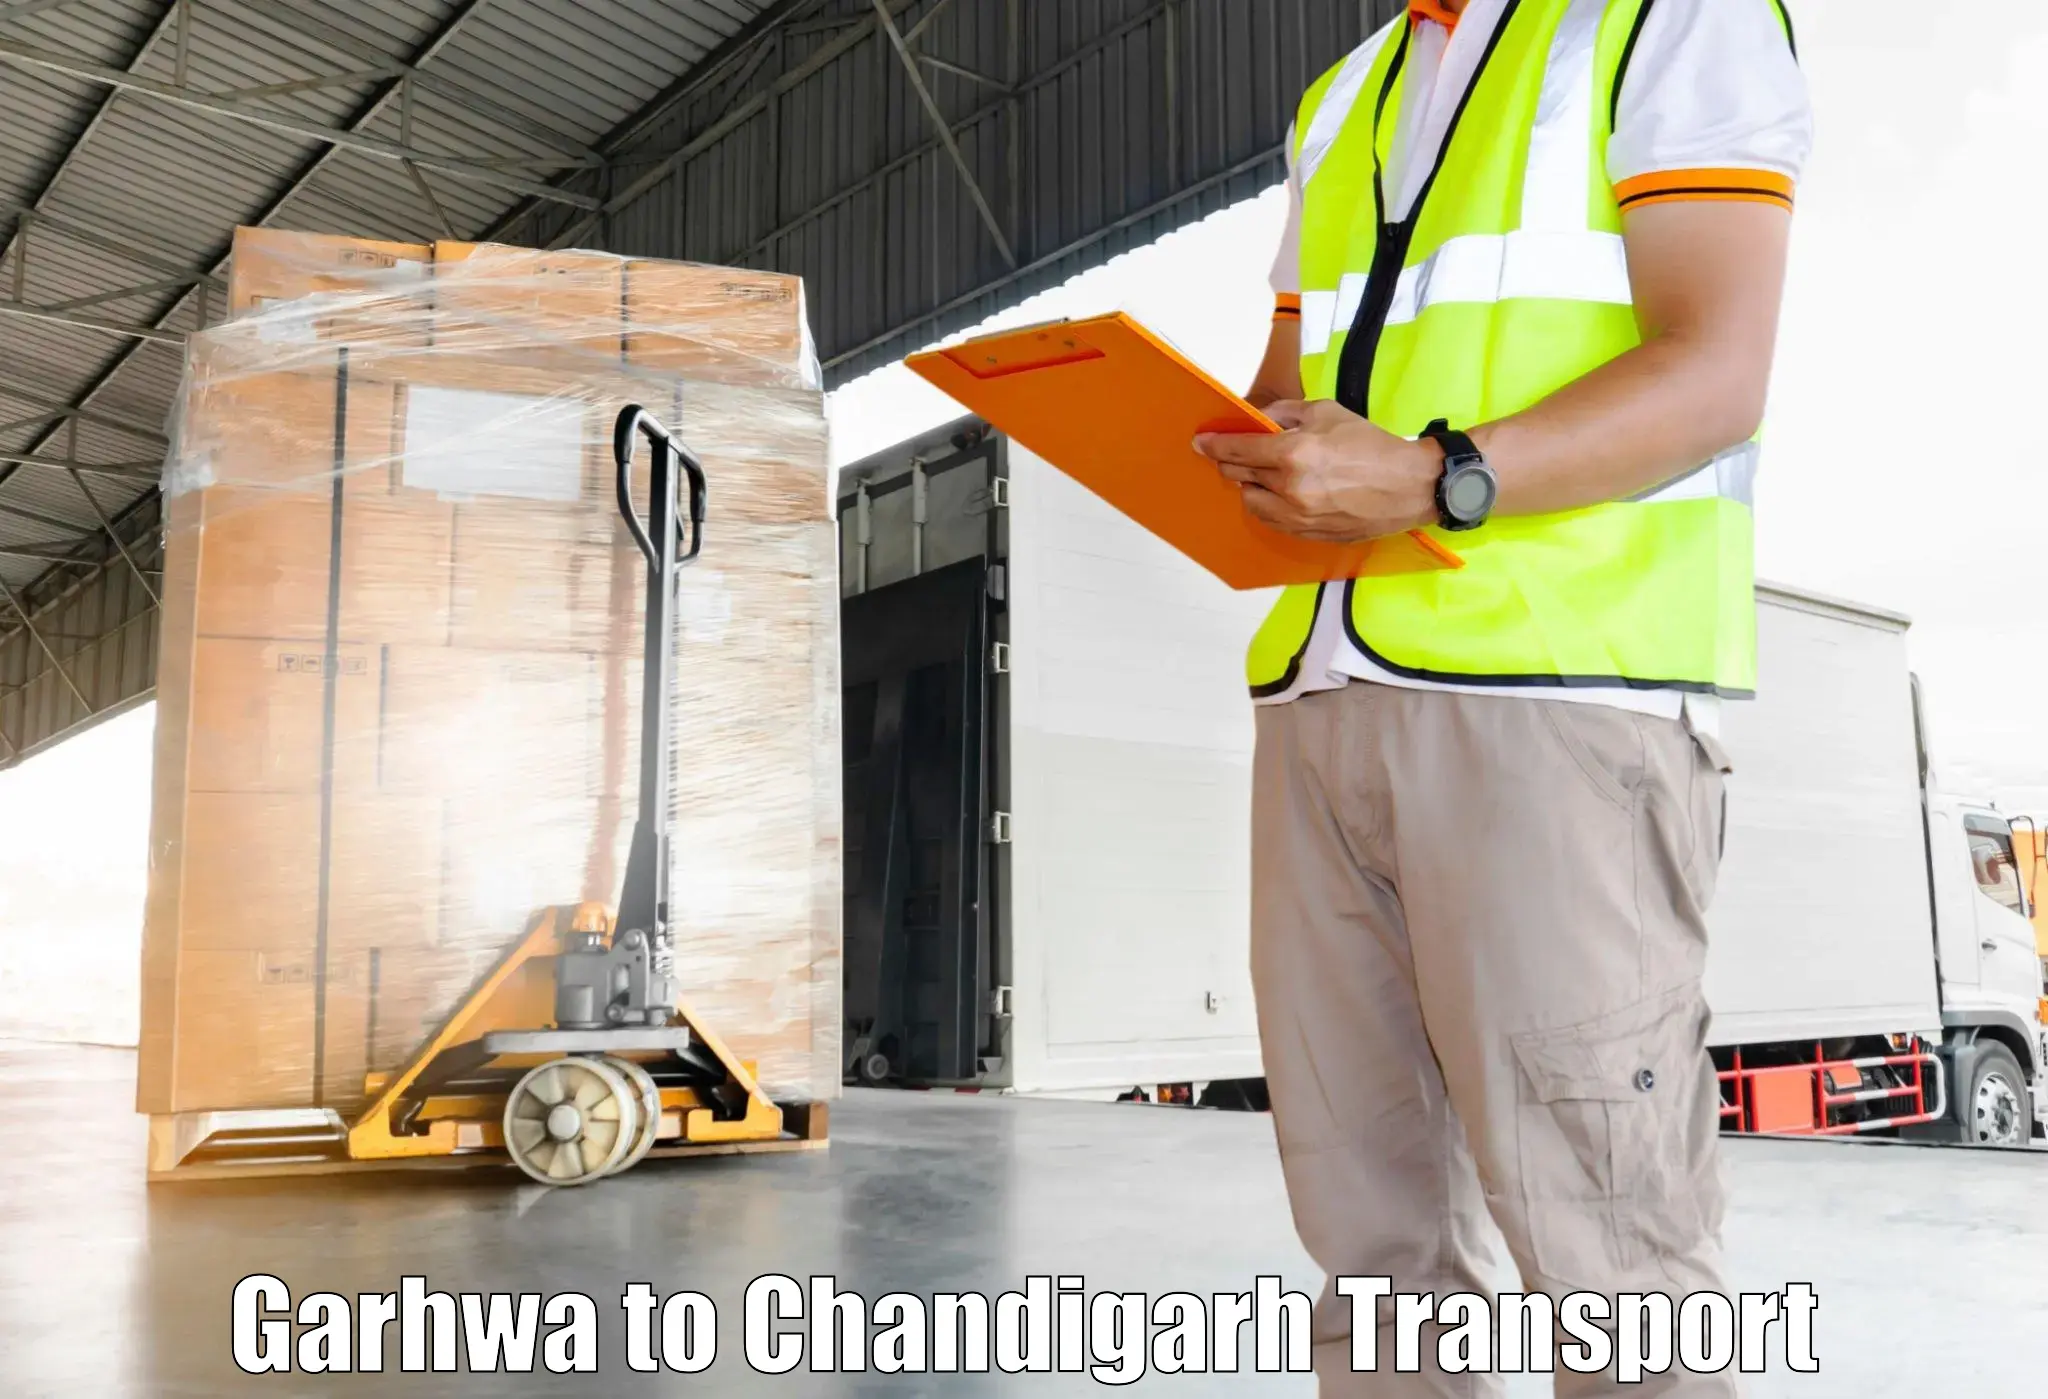 Shipping partner Garhwa to Chandigarh